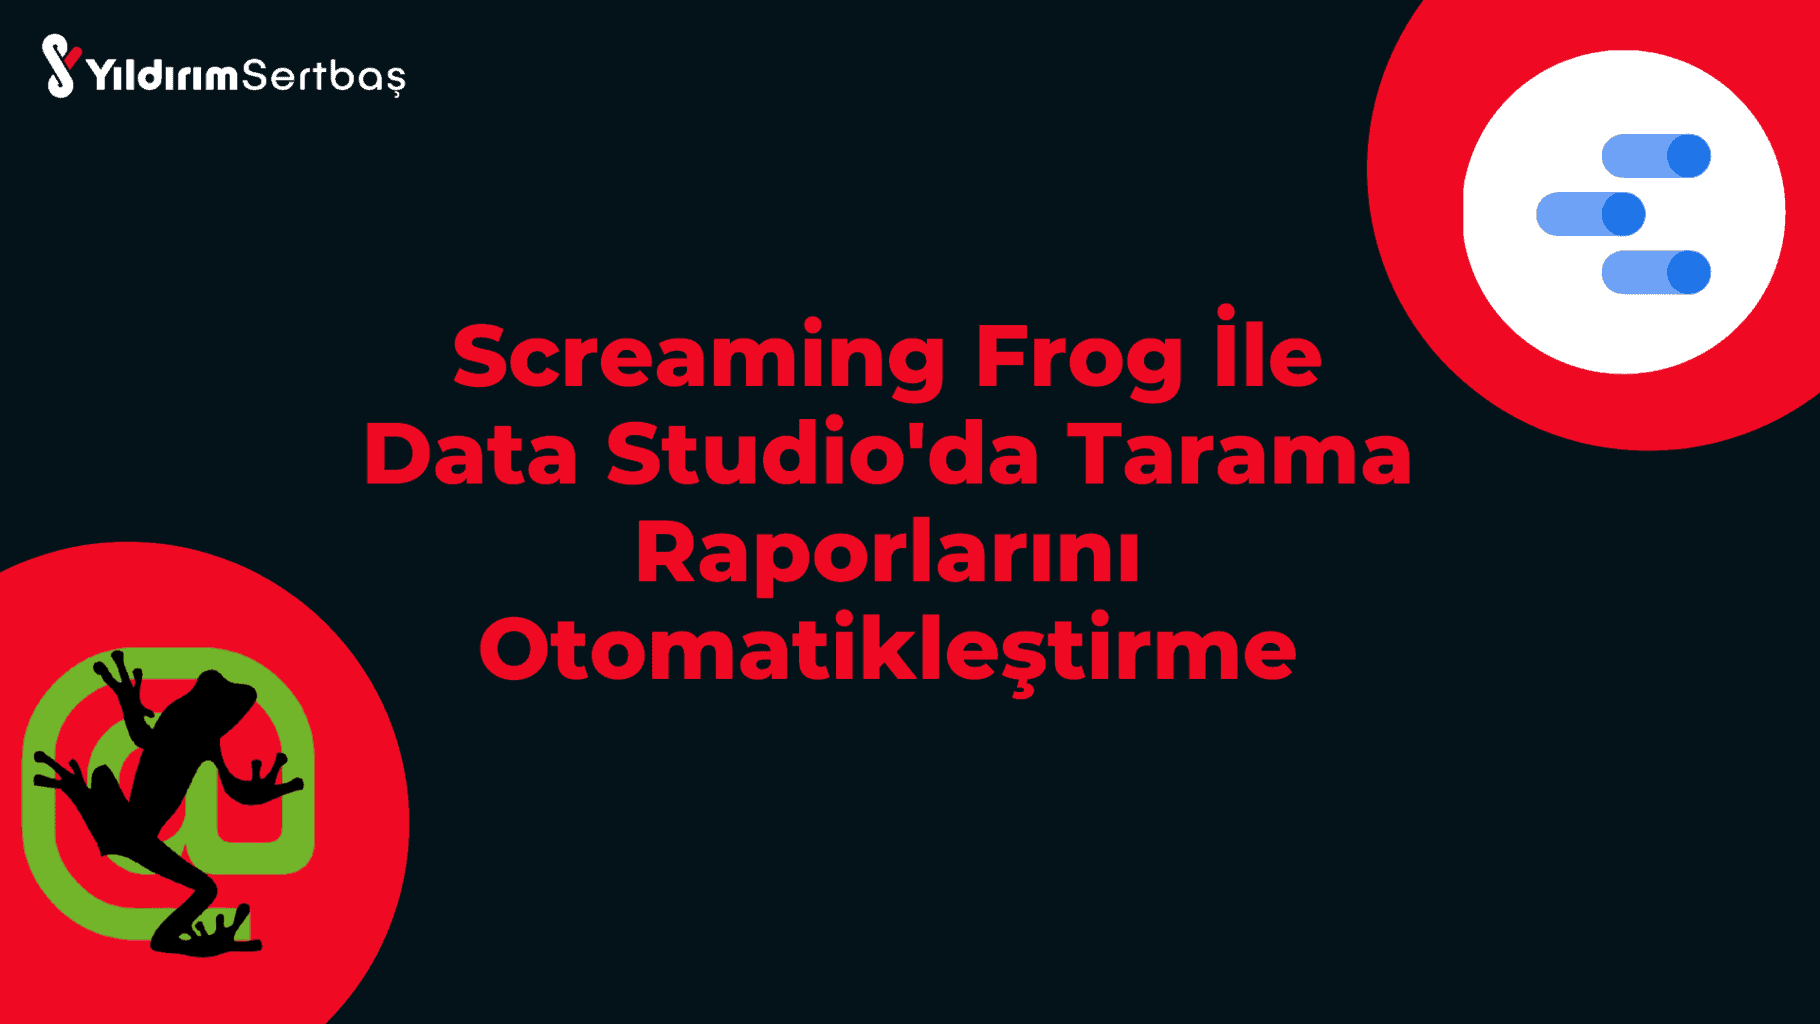 Screaming Frog ile Data Studio tarama raporlarını otomatikleştirme